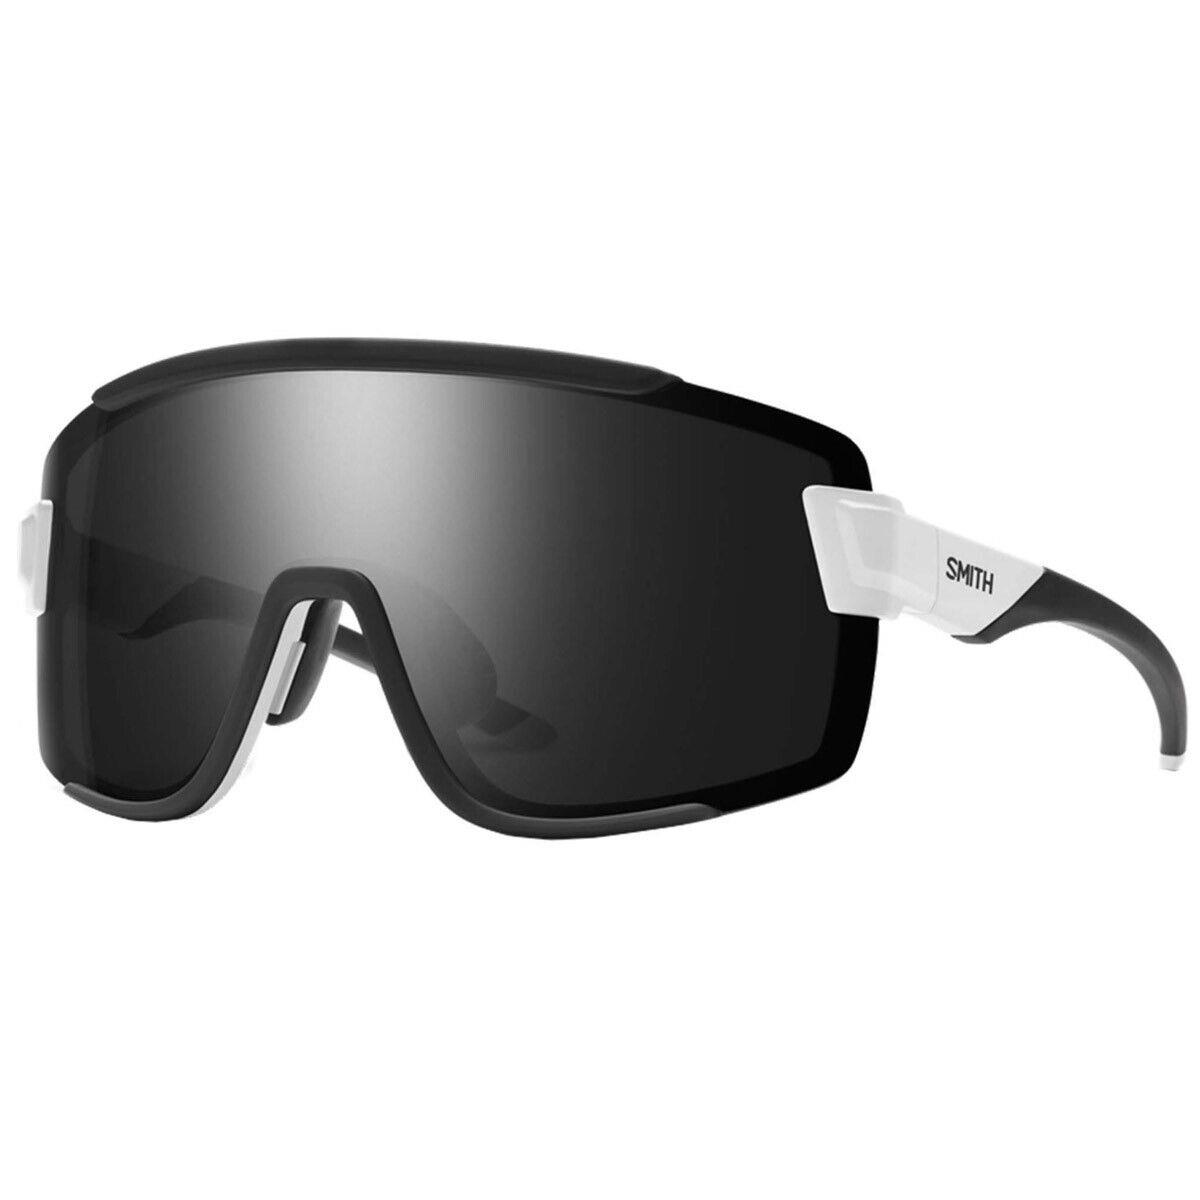 Smith Wildcat Sunglasses White Frame Chromapop Black Lens - Frame: White, Lens: Black